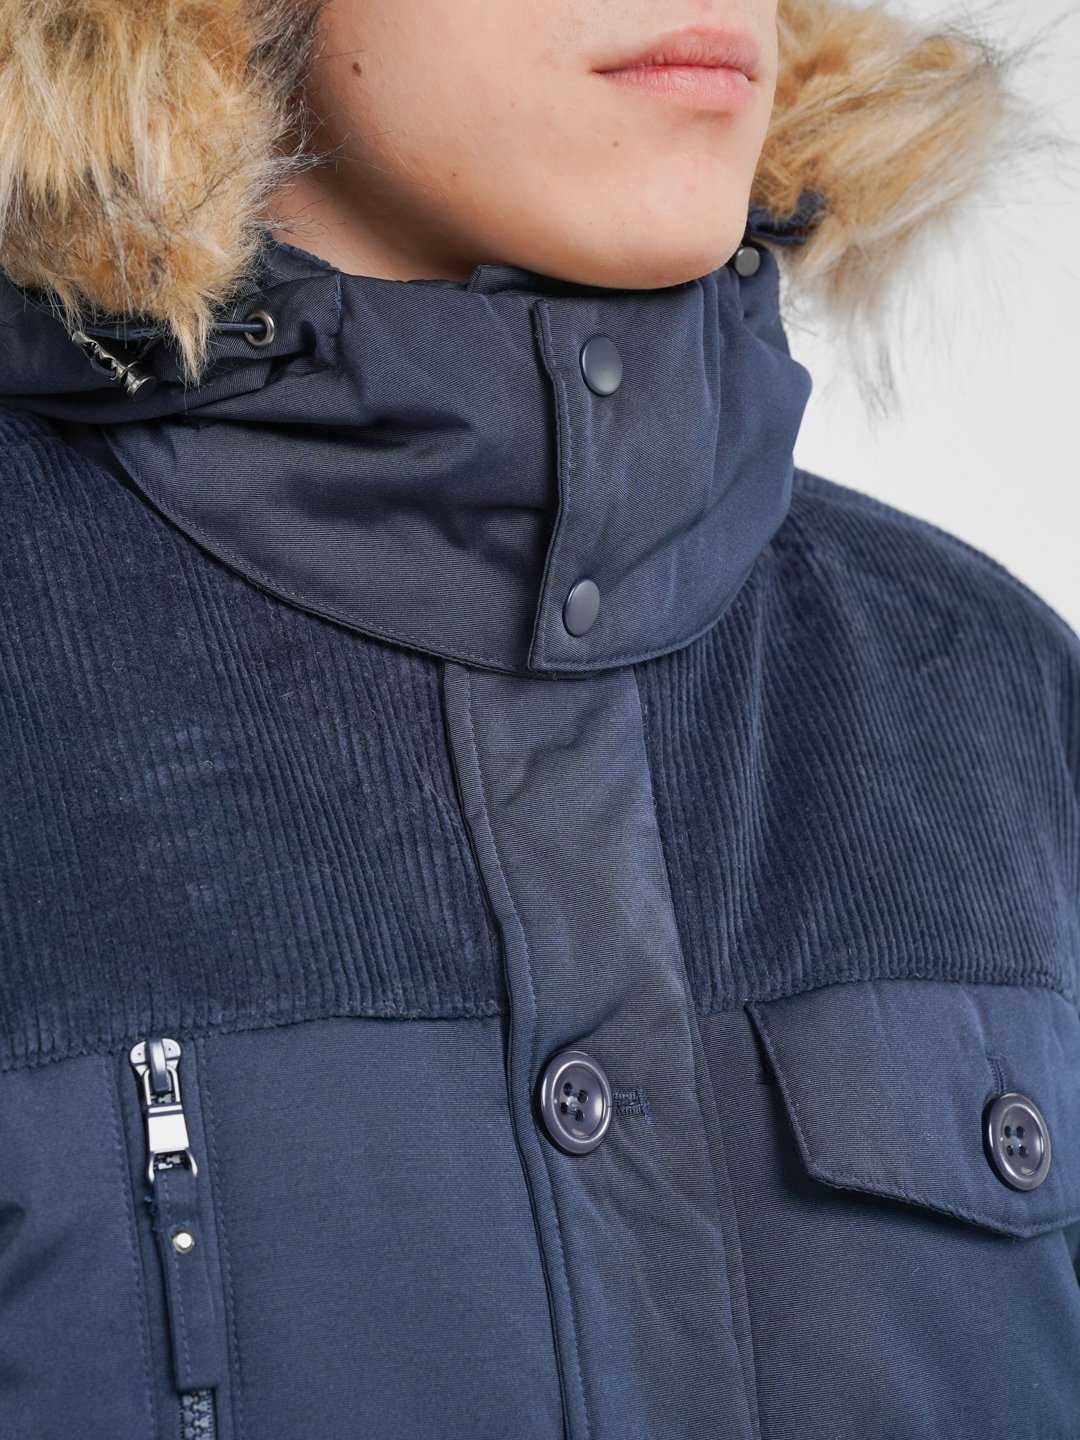 -40% Мужская зимняя куртка аляска, с мехом, до -20С